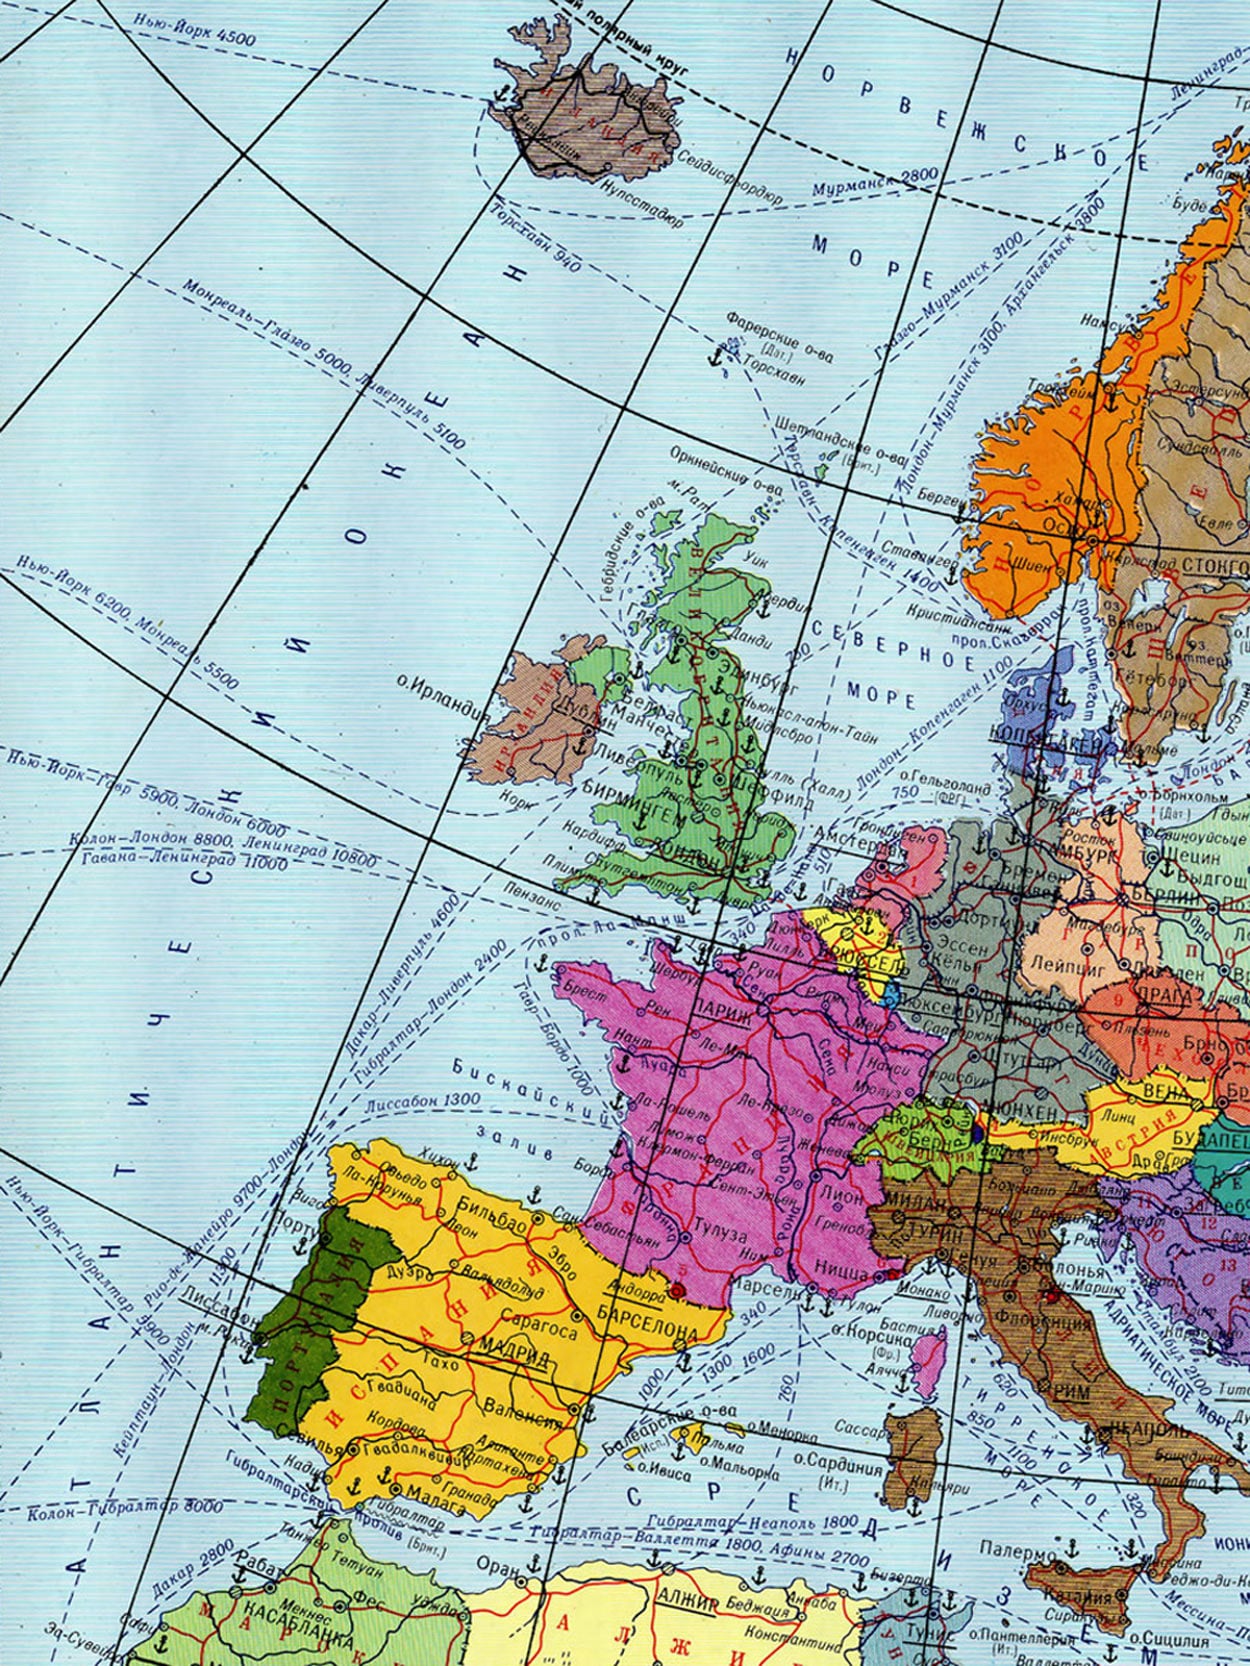 Географическая карта европы крупным планом на русском языке